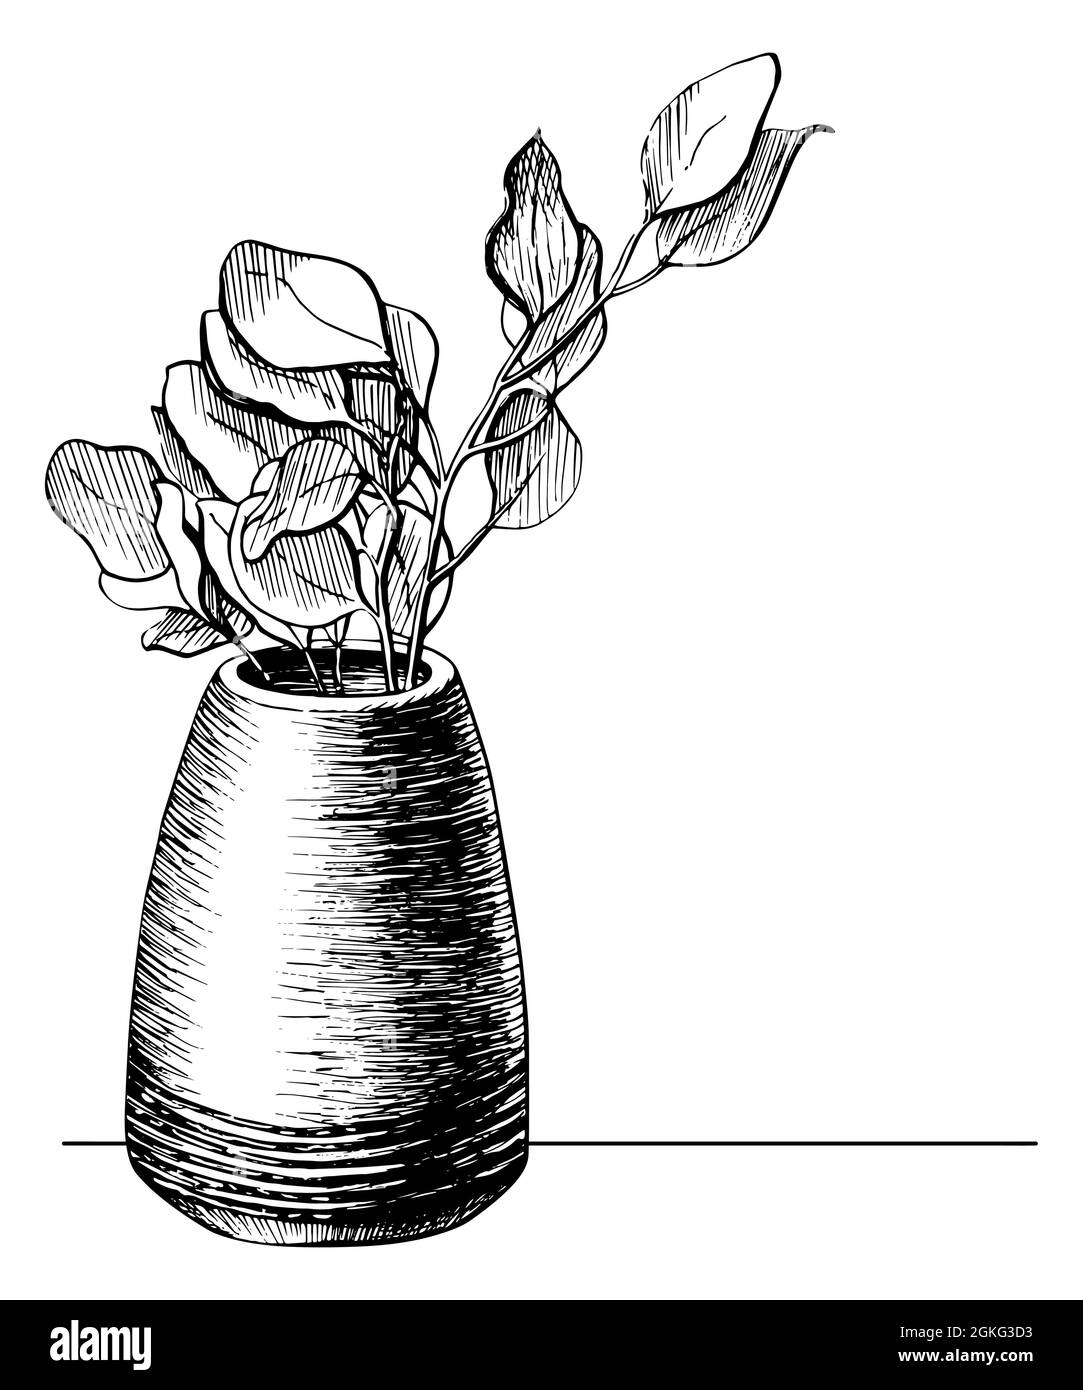 Fleur dans une ligne de pot dessin graphique carte postale. Branche d'arbre dans une illustration vectorielle de vase dessinée à la main. Esquisse de printemps nature d'une plante isolée sur fond blanc Illustration de Vecteur